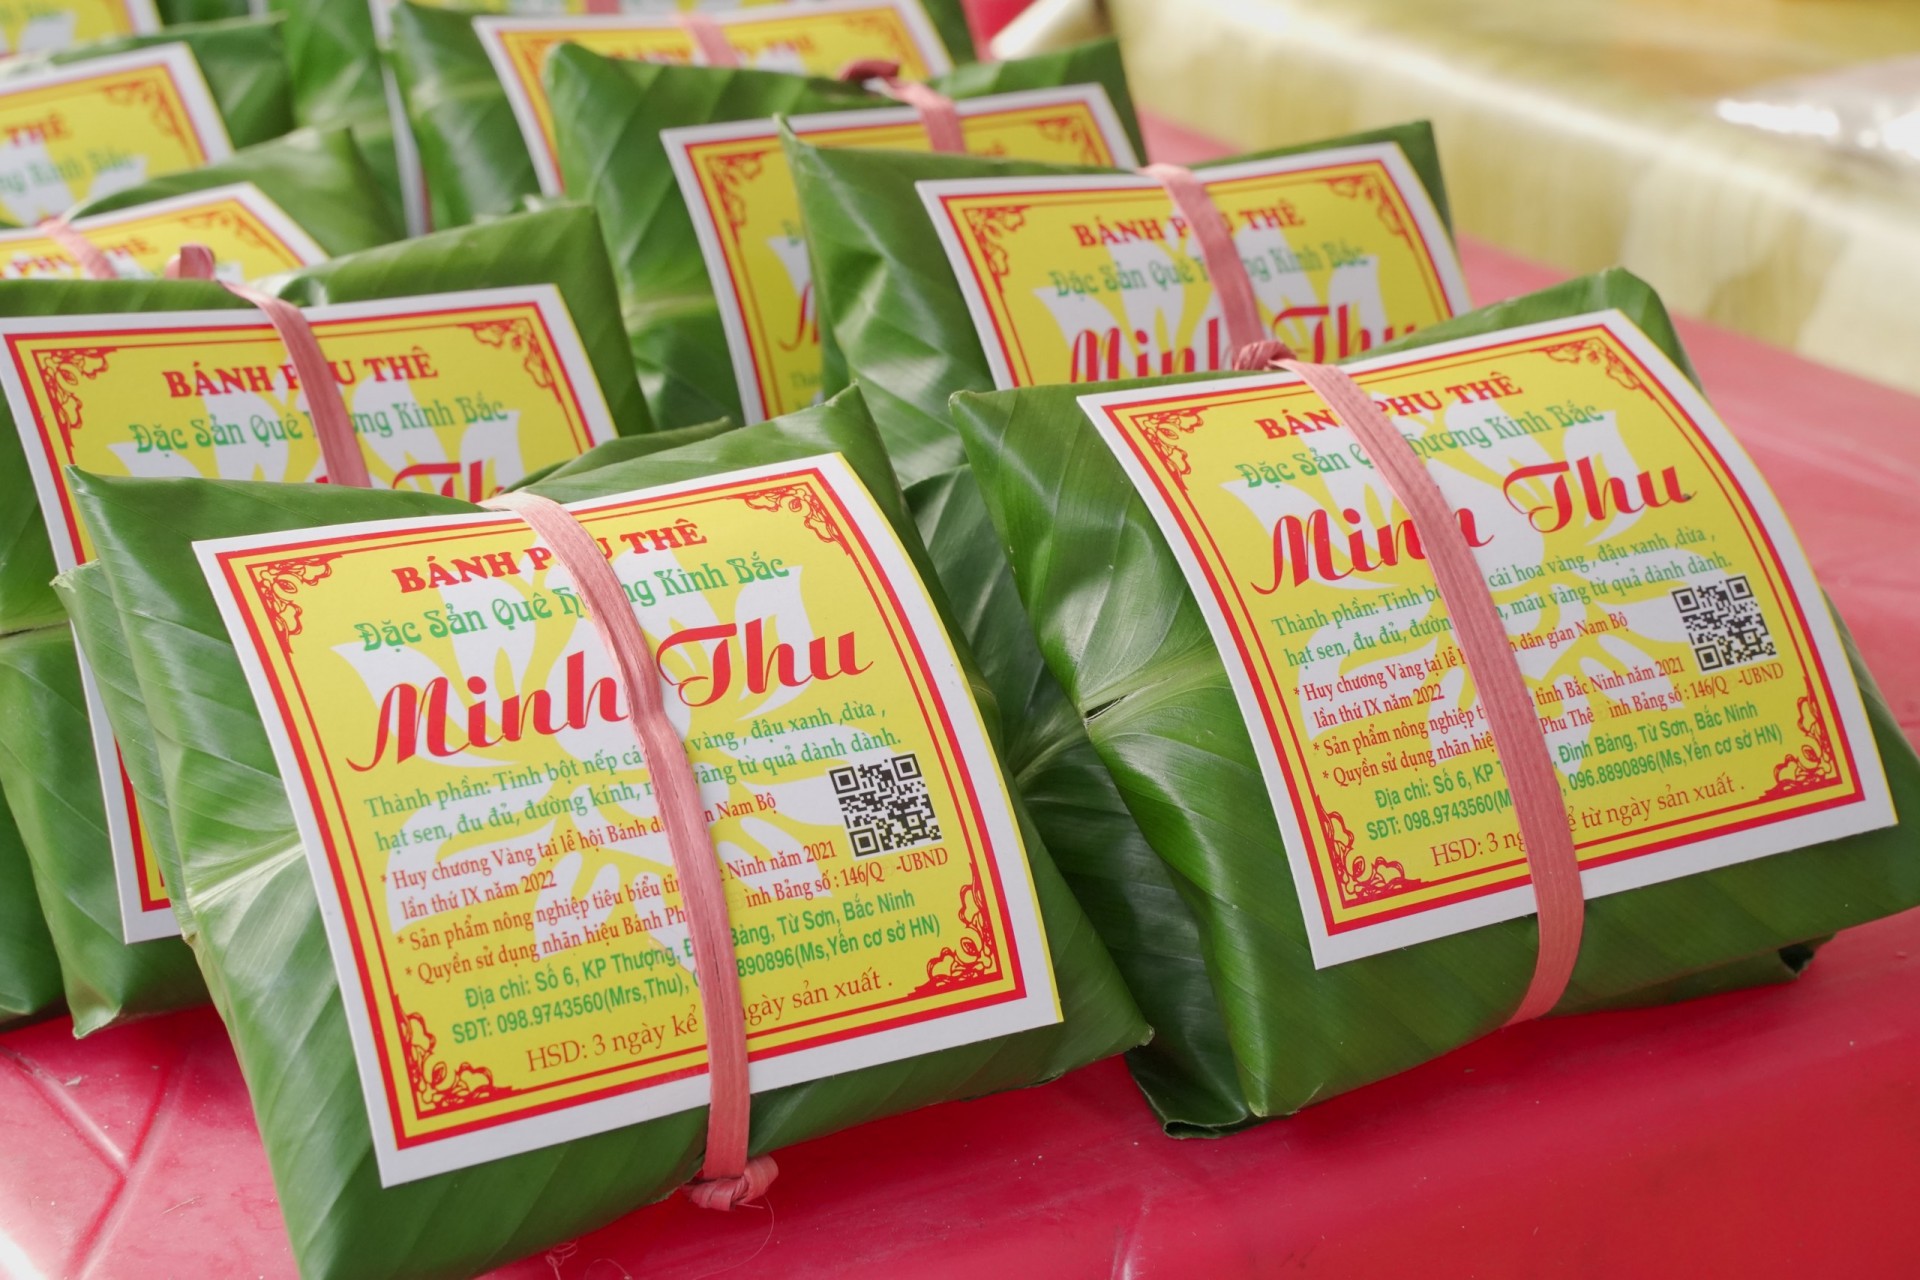 Bánh phu thê Minh Thu - sản phẩm OCOP 4 sao tỉnh Bắc Ninh